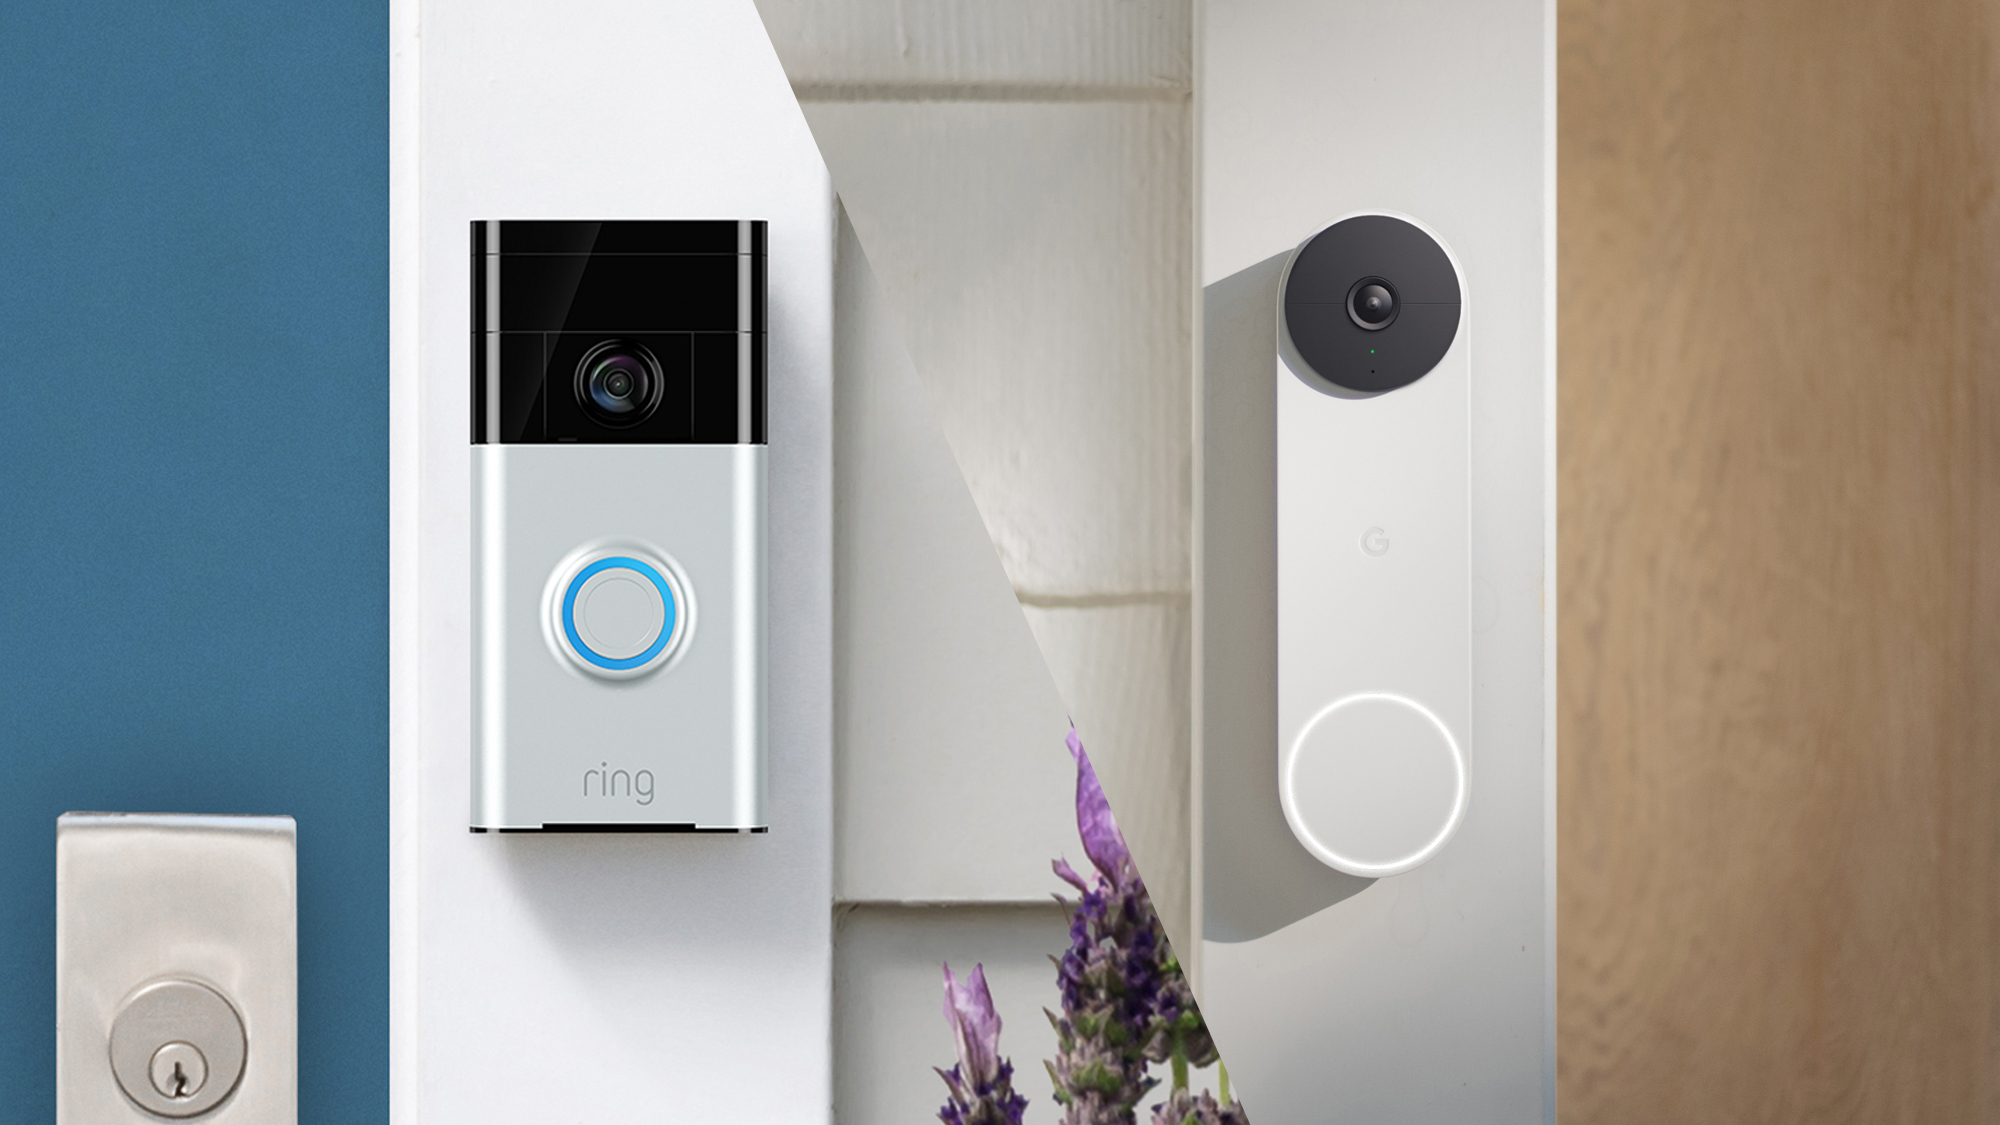 wedstrijd Reciteren ontwerper Ring vs. Nest: Ring Video Doorbell and Nest Doorbell (battery) compared |  Tom's Guide